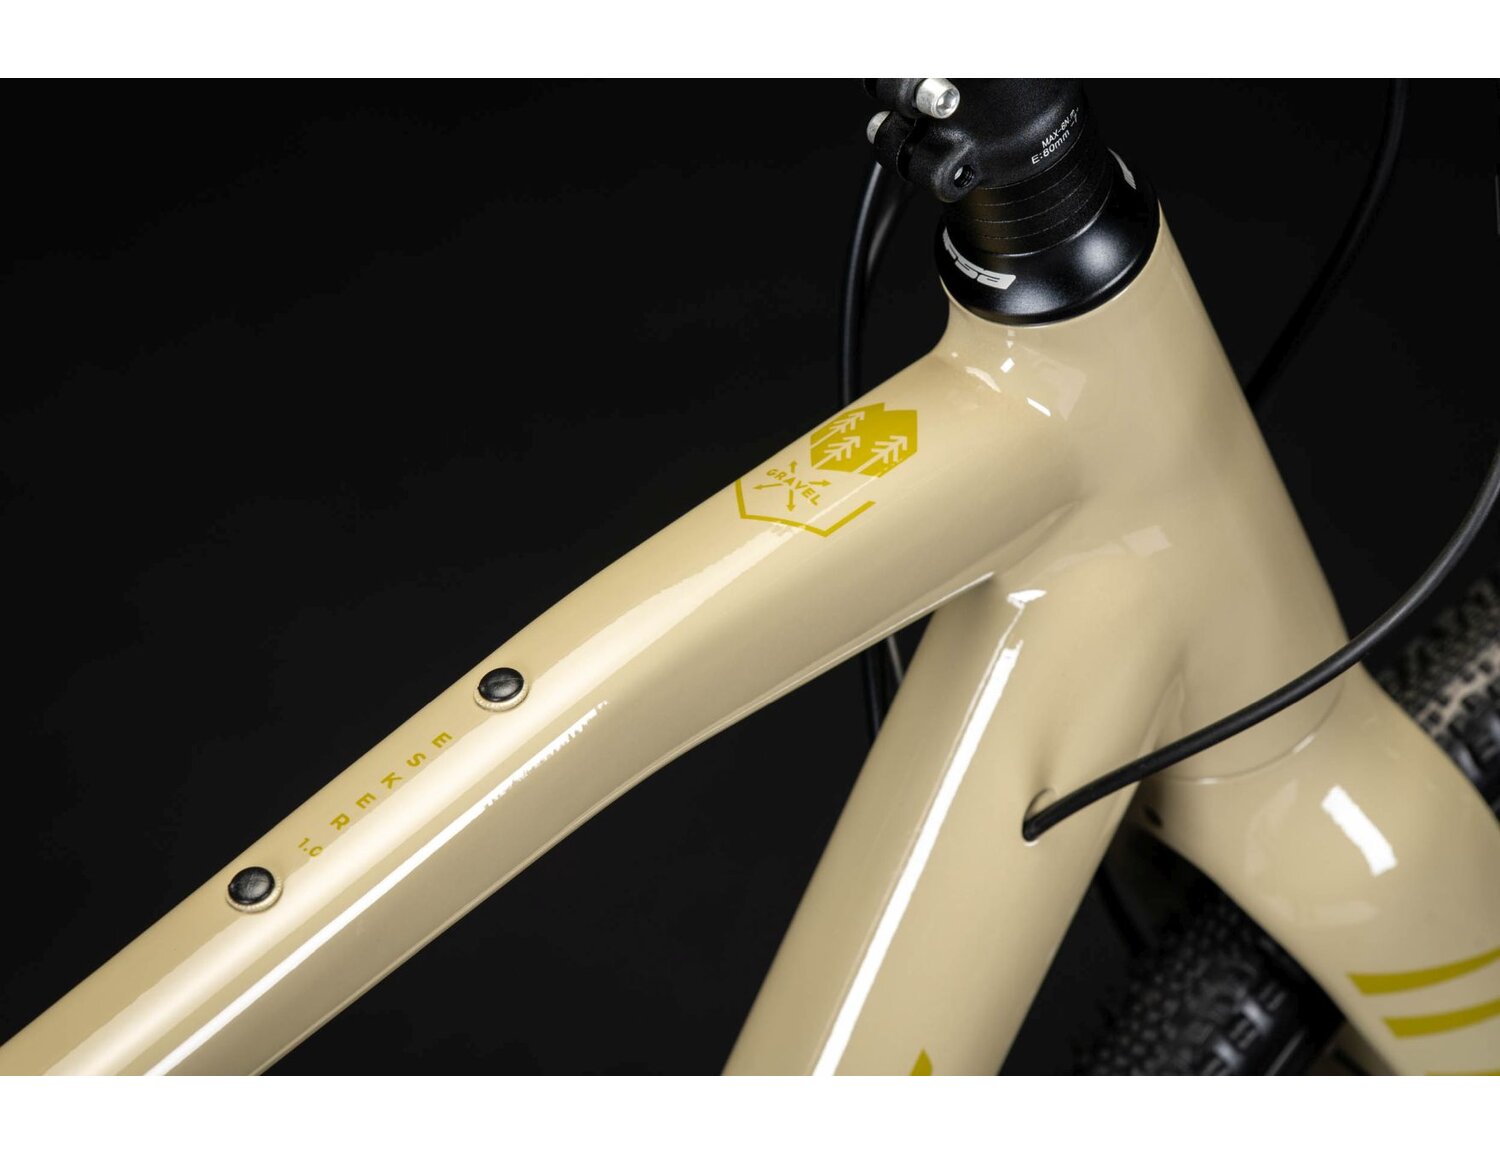  Aluminiowa rama oraz symbol gravela w rowerze gravelowym KROSS Esker 1.0 